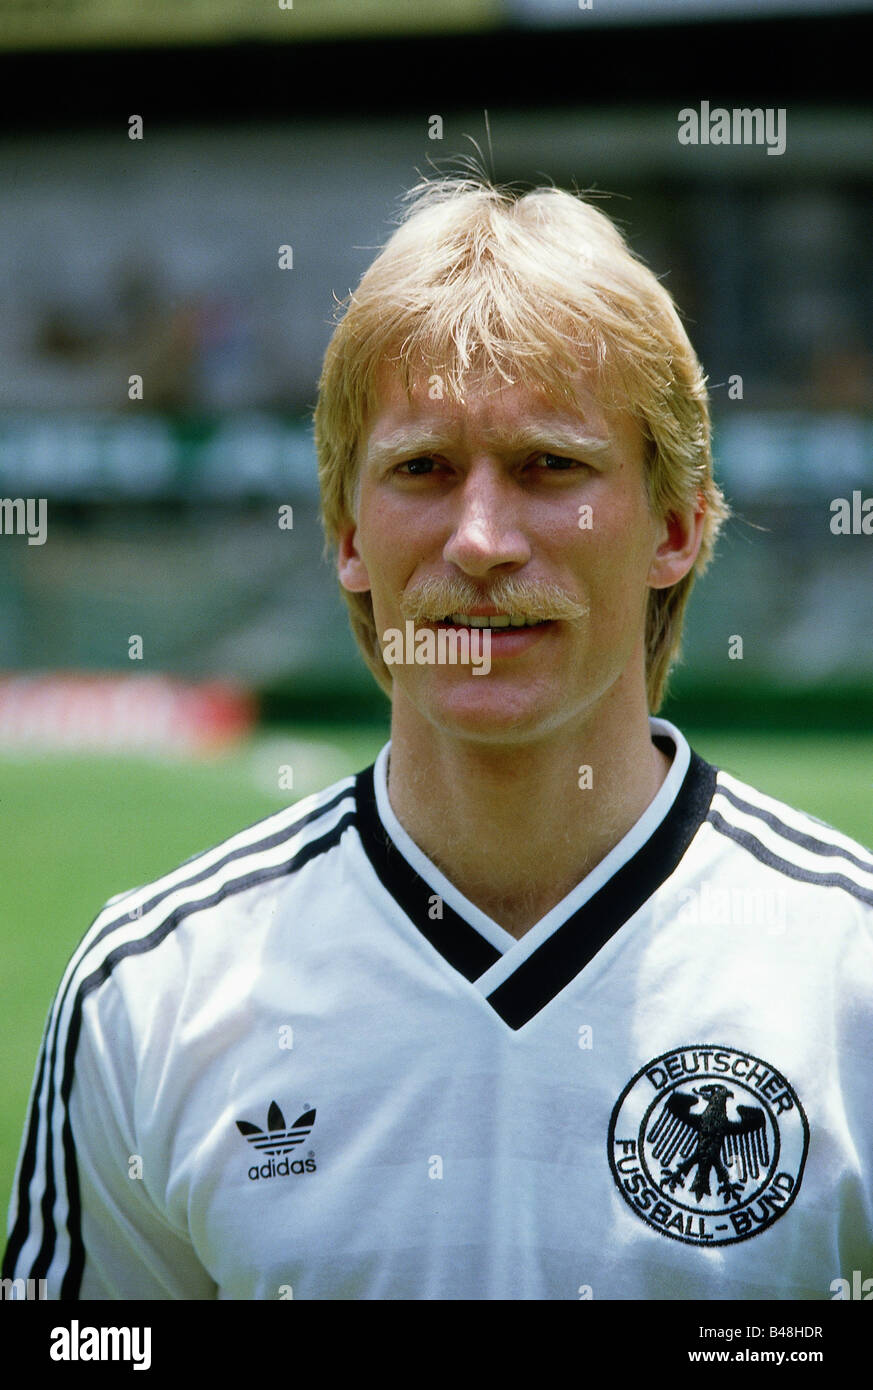 Rahn, Uwe, * 21.5.1962, deutscher Sportler (Fußballer), Porträt, 1980er  Jahre Stockfotografie - Alamy